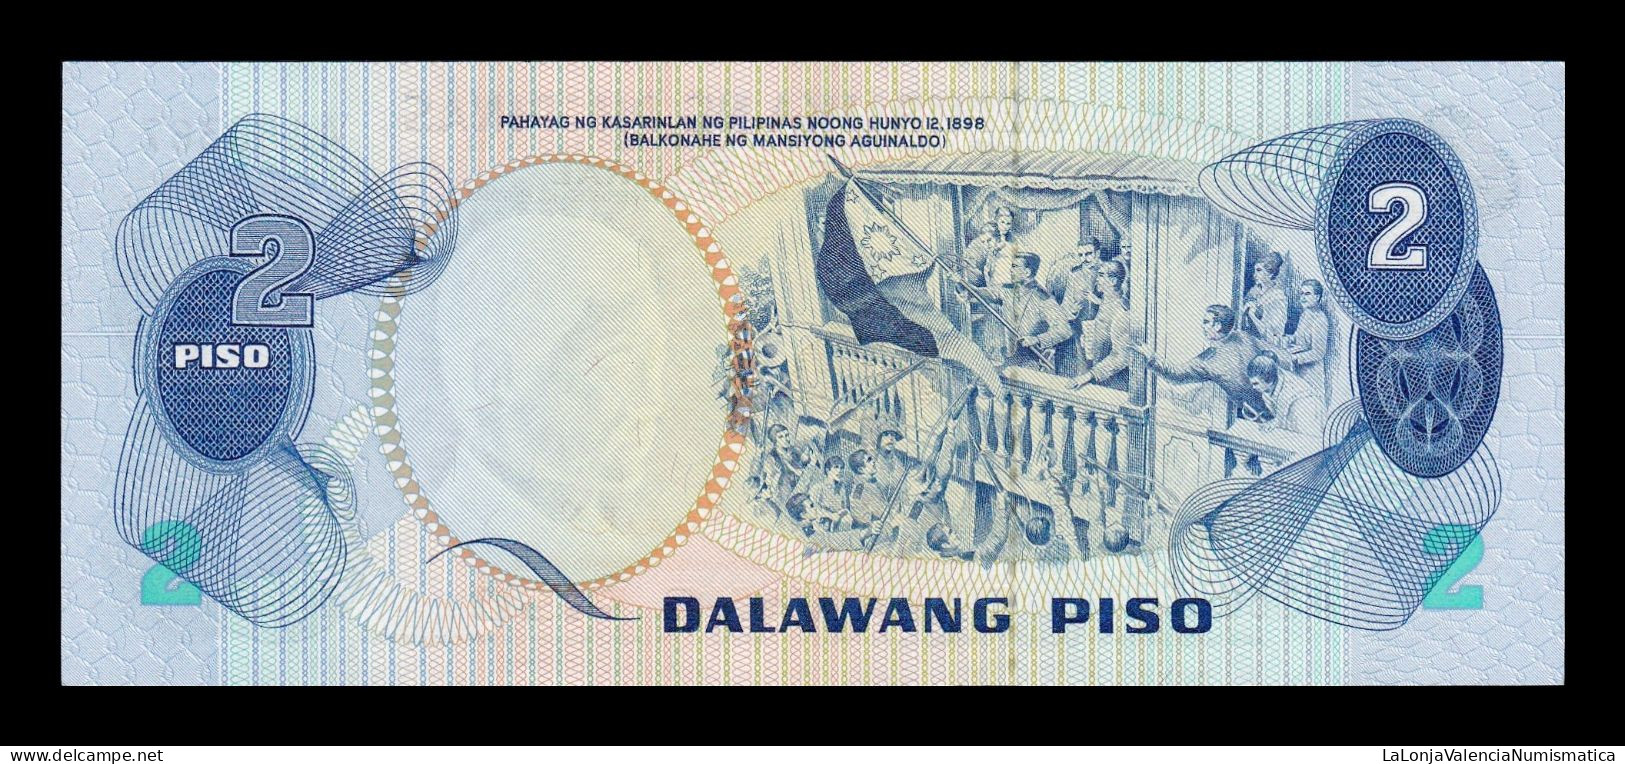 Filipinas Philippines 2 Piso Jose Rizal 1974 Pick 152 Sc Unc - Filippine